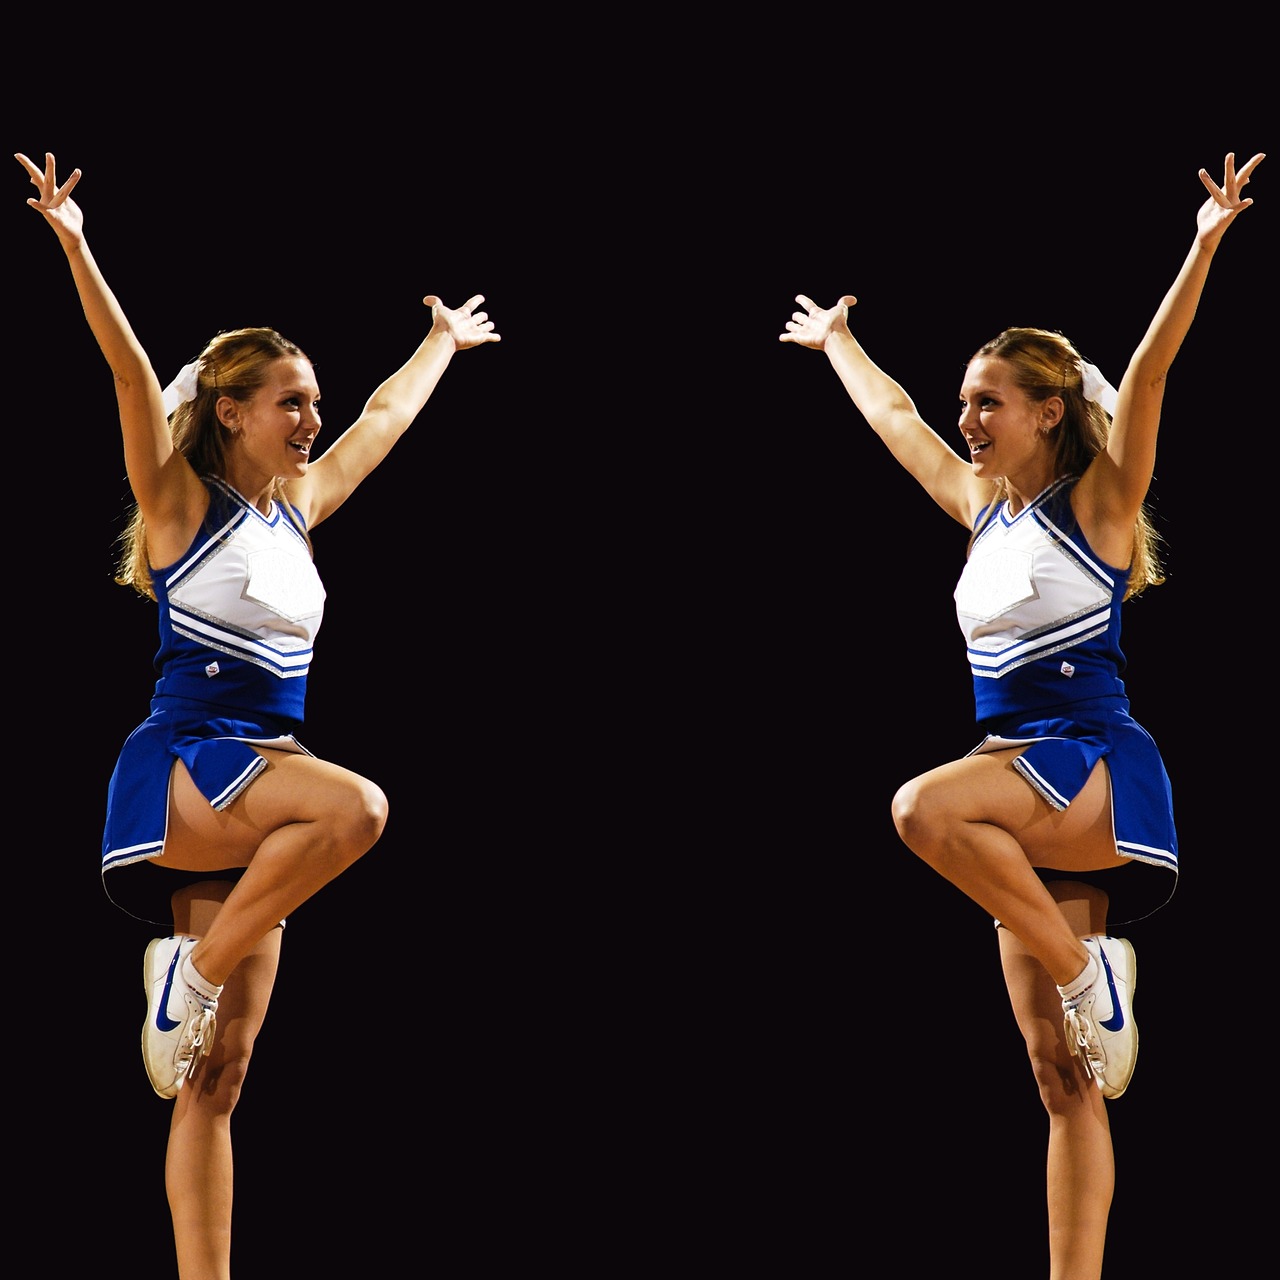 Download Free Photo Of Cheerleaderssymmetrytwinsmirror Imagegirls From 